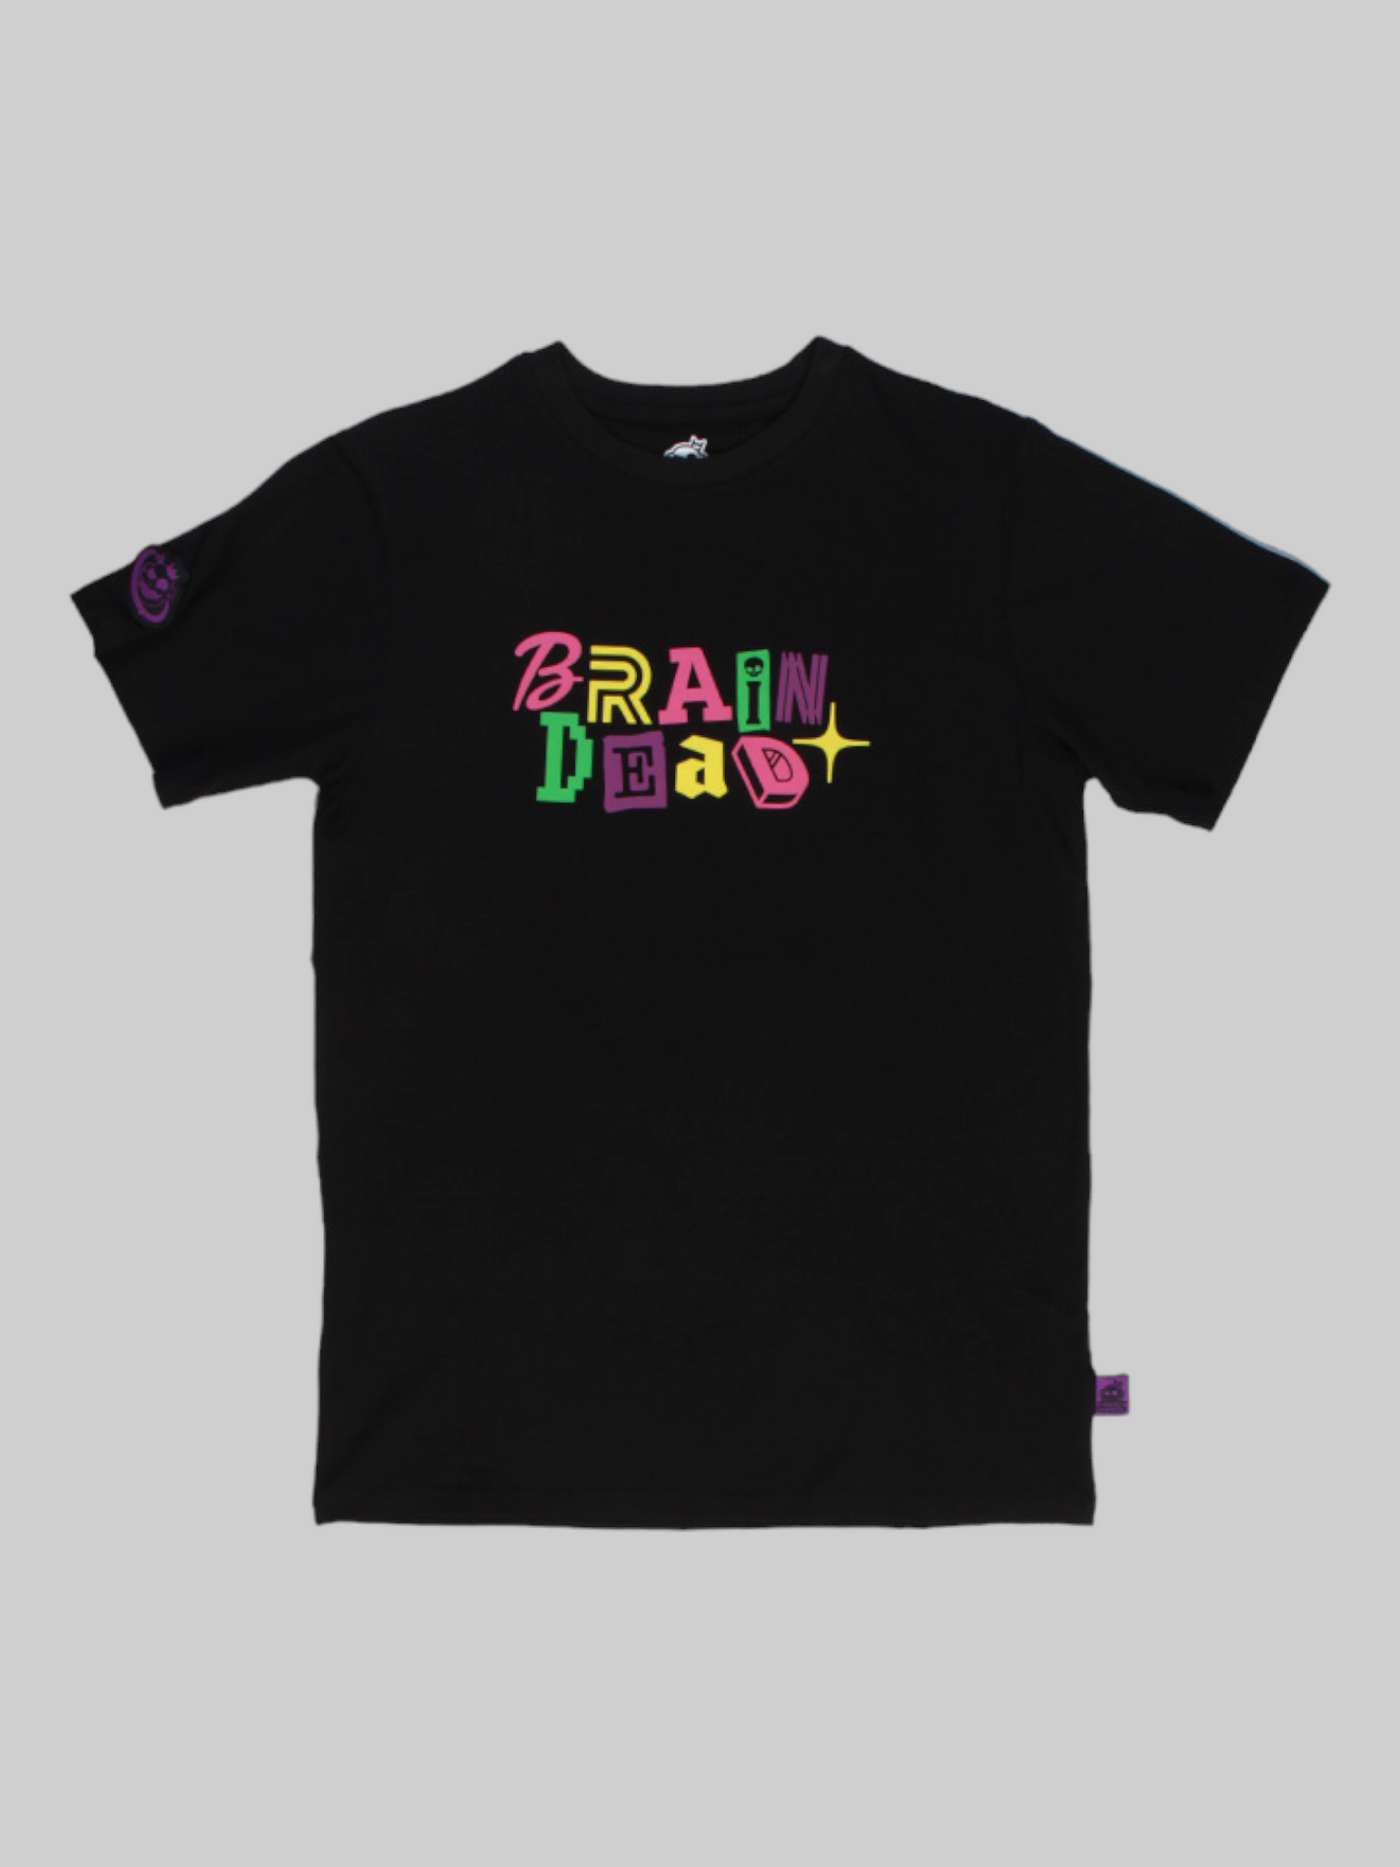 FirstGrade - BRAIN DEAD, Sort T-shirt